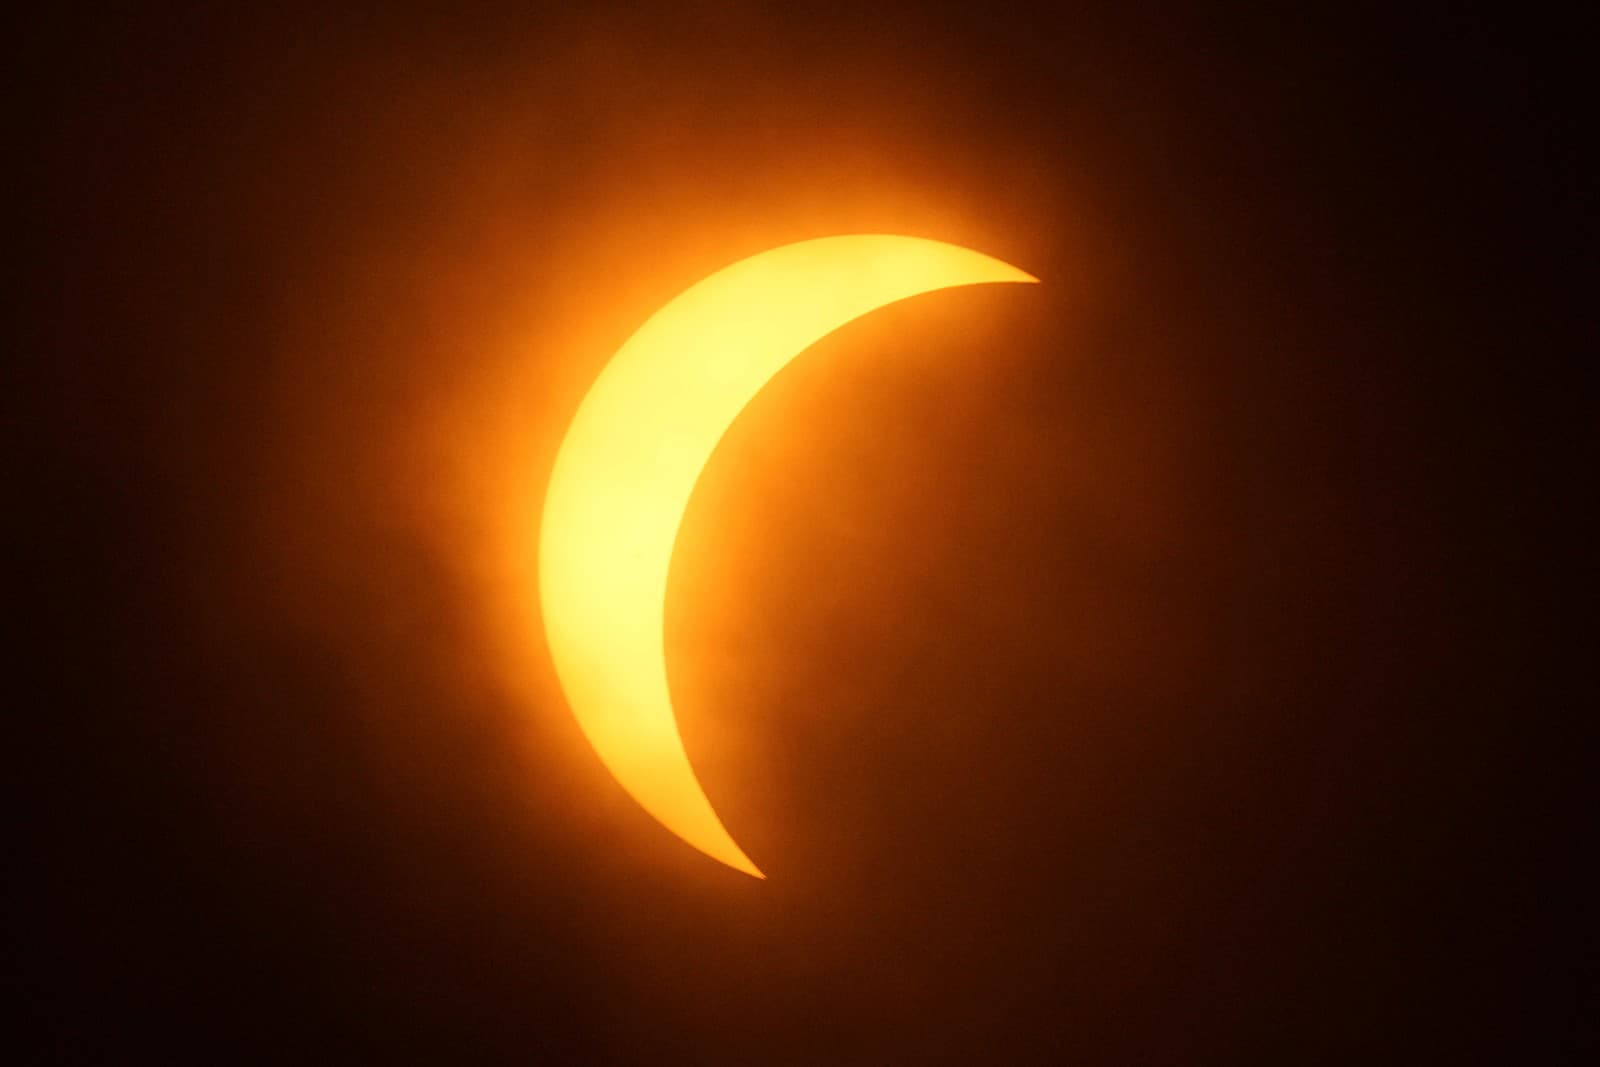 Mesiac čiastočne zakrýva slnko počas úplného zatmenia Slnka v meste Eagle Pass, v americkom štáte Texas